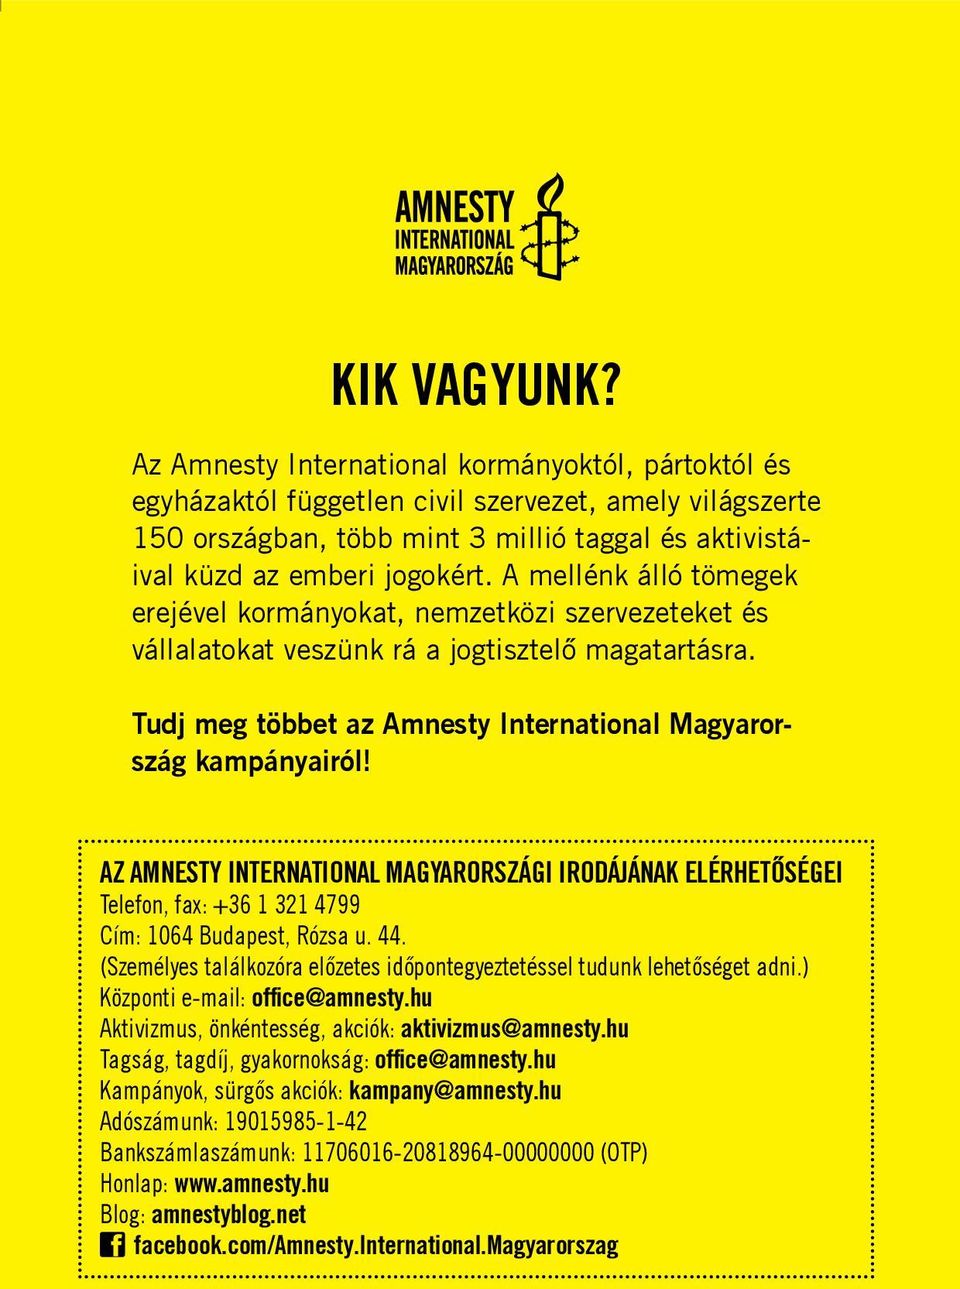 A mellénk álló tömegek erejével kormányokat, nemzetközi szervezeteket és vállalatokat veszünk rá a jogtisztelő magatartásra. Tudj meg többet az Amnesty International Magyarország kampányairól!